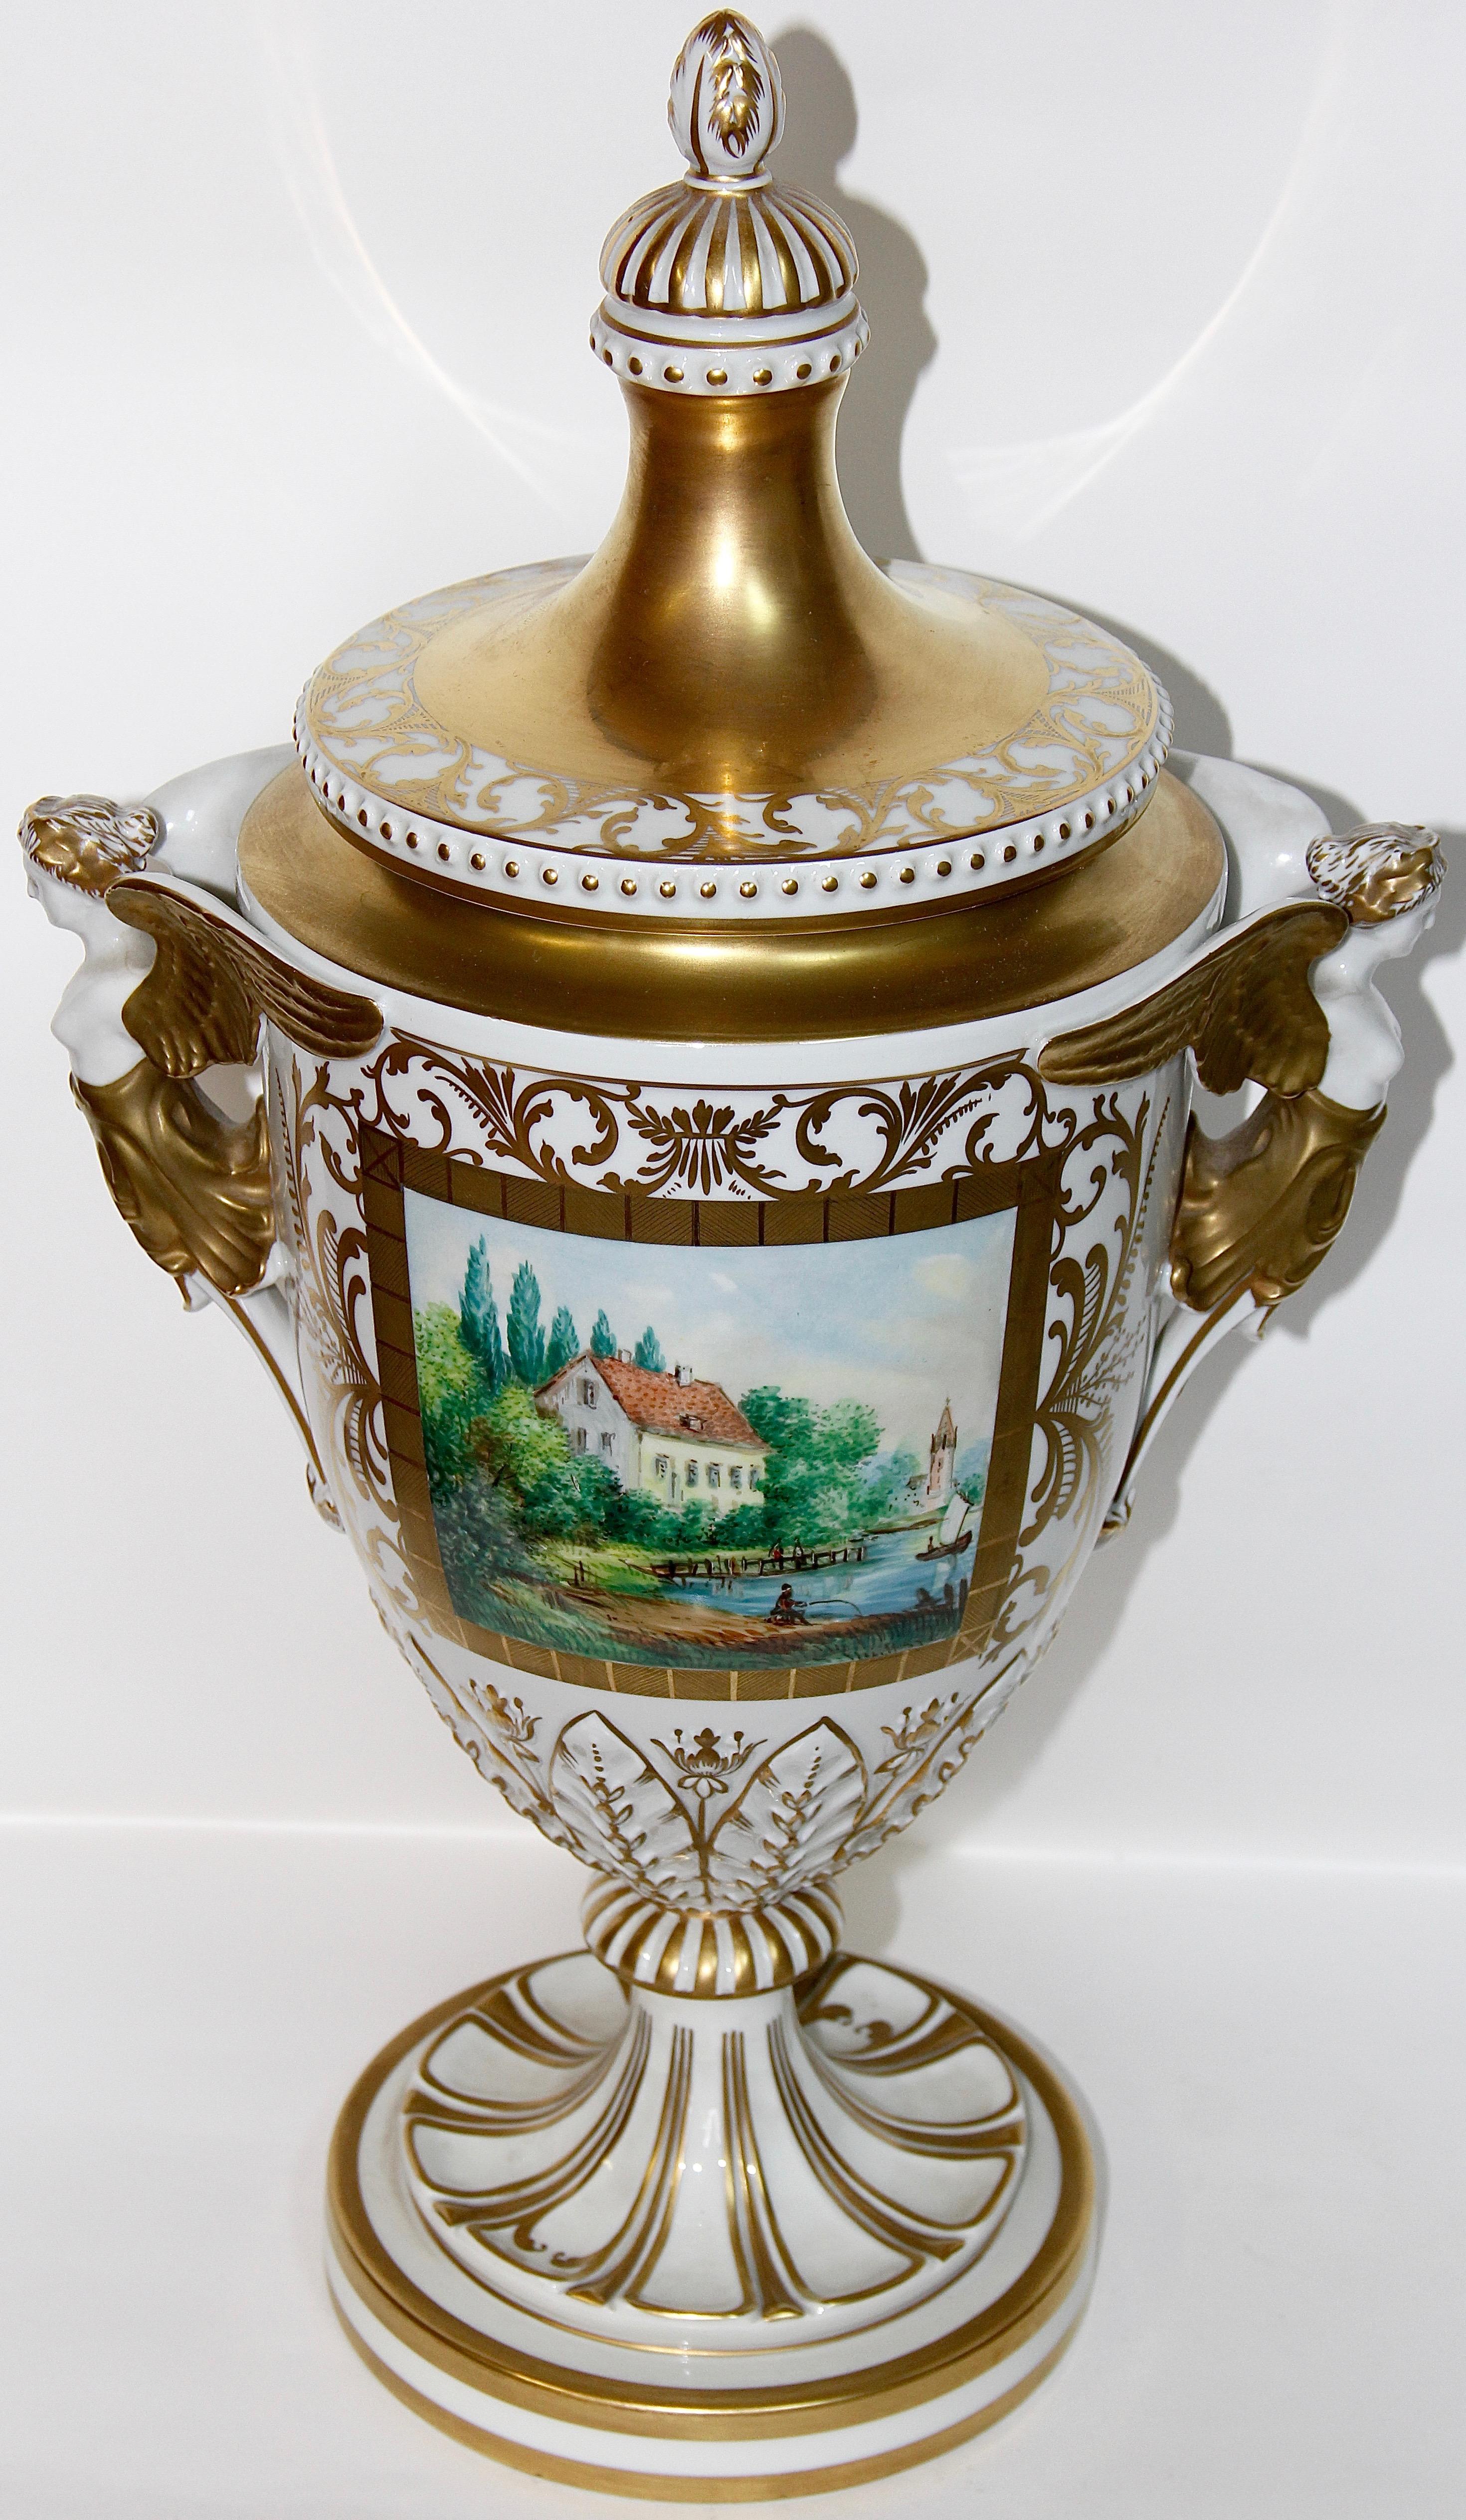 Prachtvolles Dresdner Porzellan, Amphora, Deckelvase, Urne mit Goldmalerei.